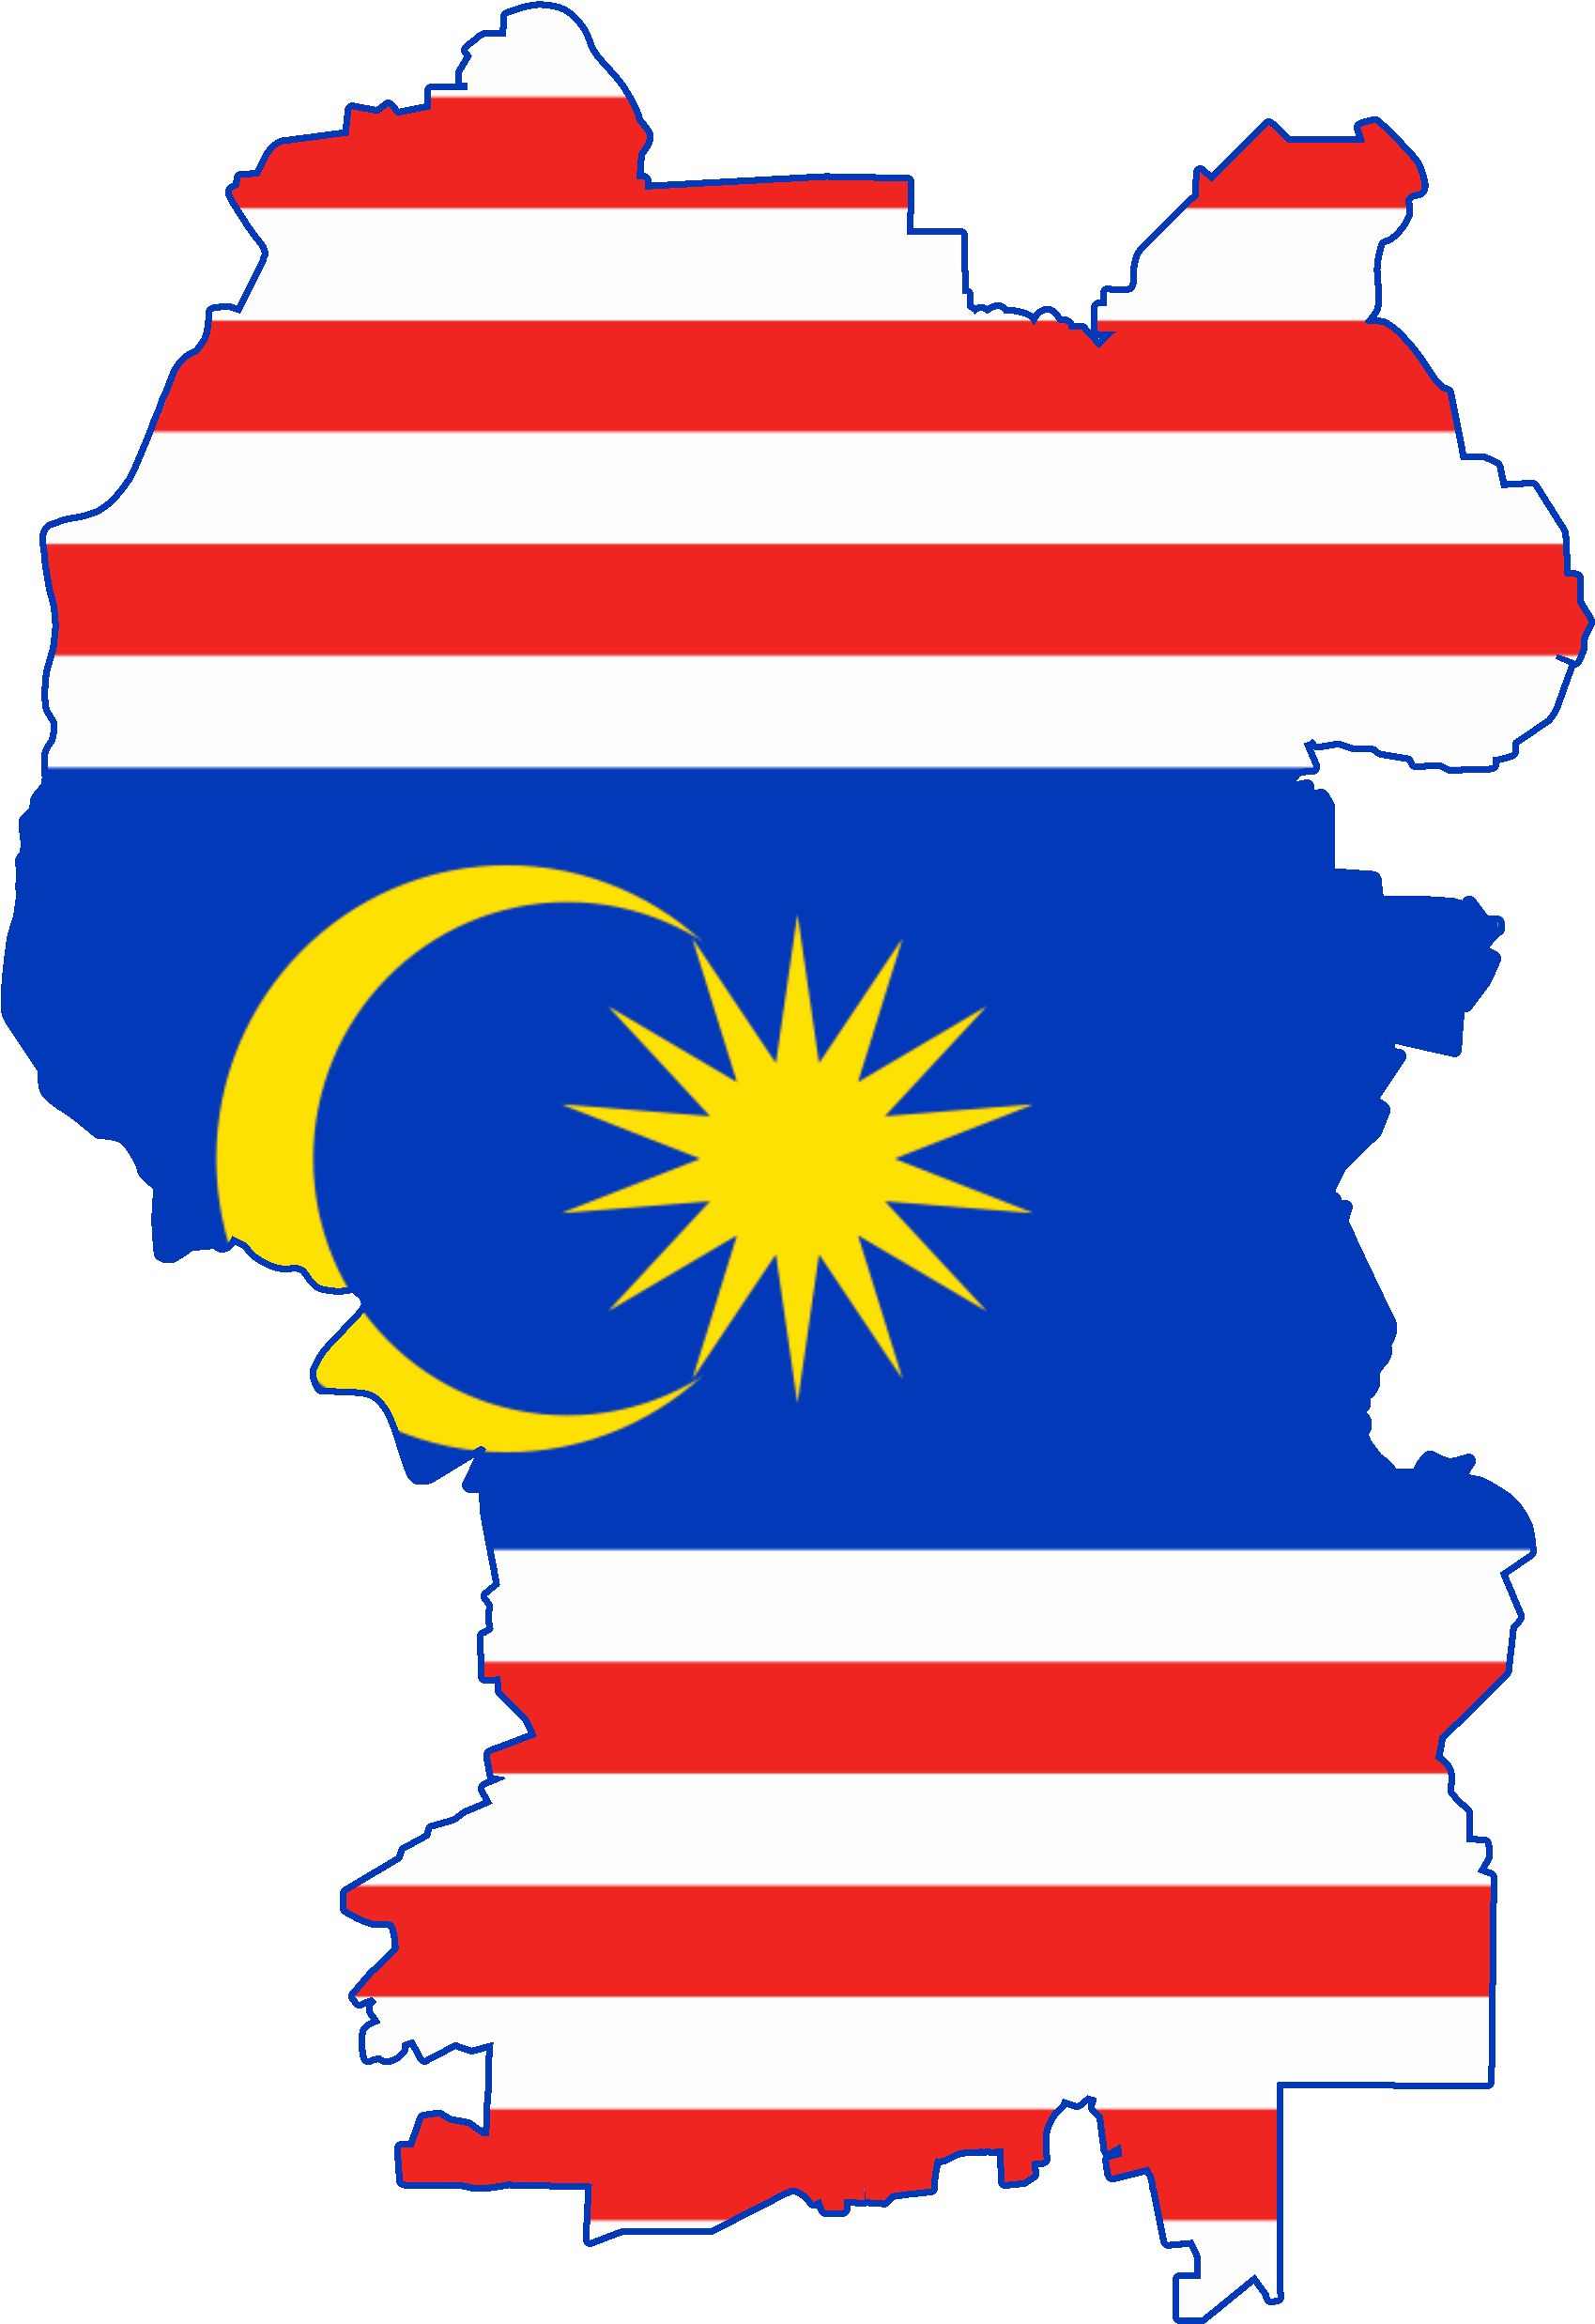 Malaysia Flag Map Image - Kuala Lumpur Flag Png (2000x2800)